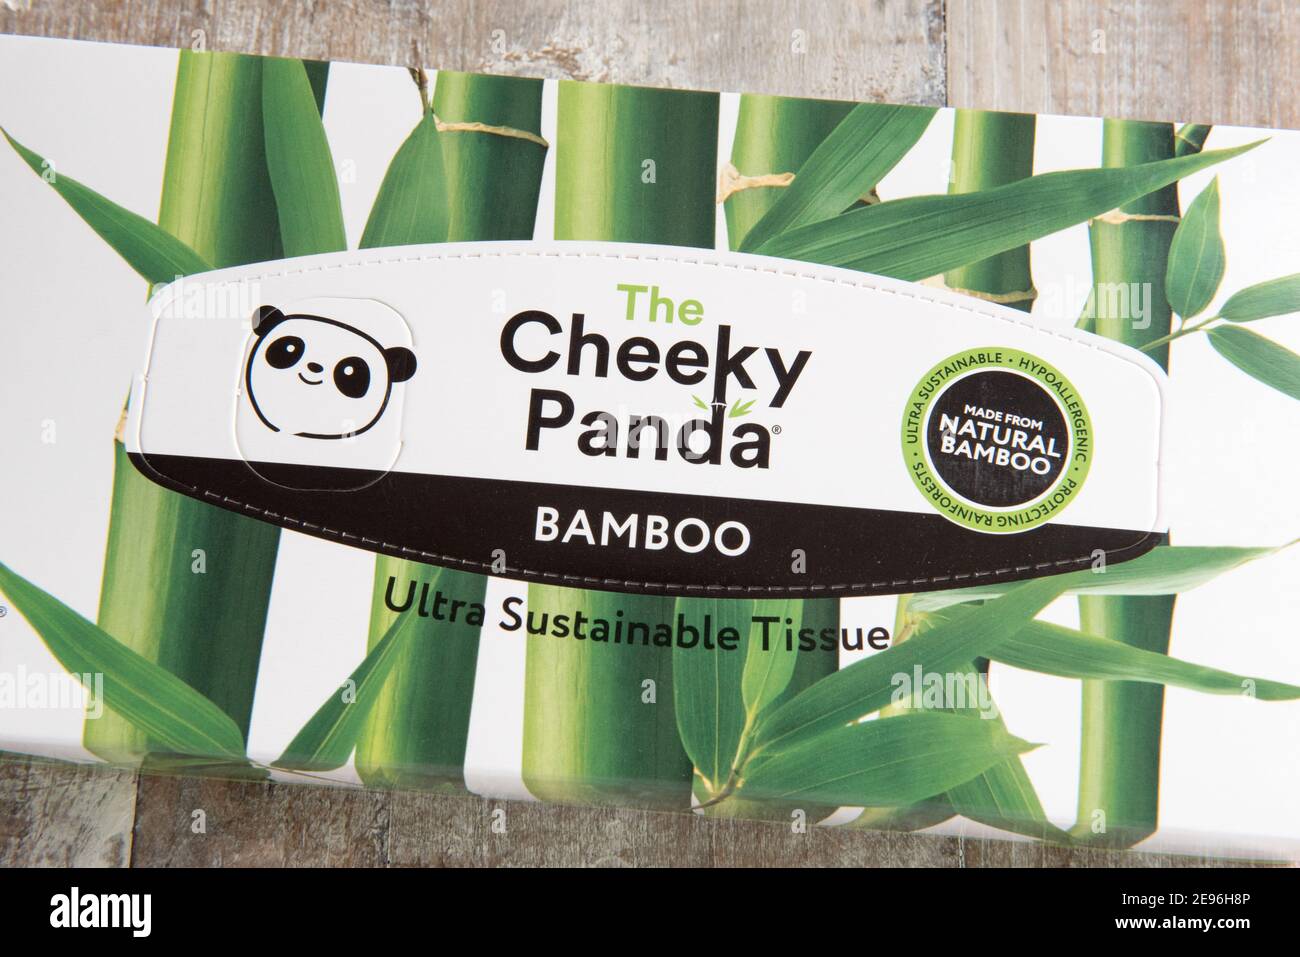 Boîte de tissus ou de tissus Cheeky Panda fabriqués à partir de Bambou naturel ultra durable sur fond de bois incliné Banque D'Images